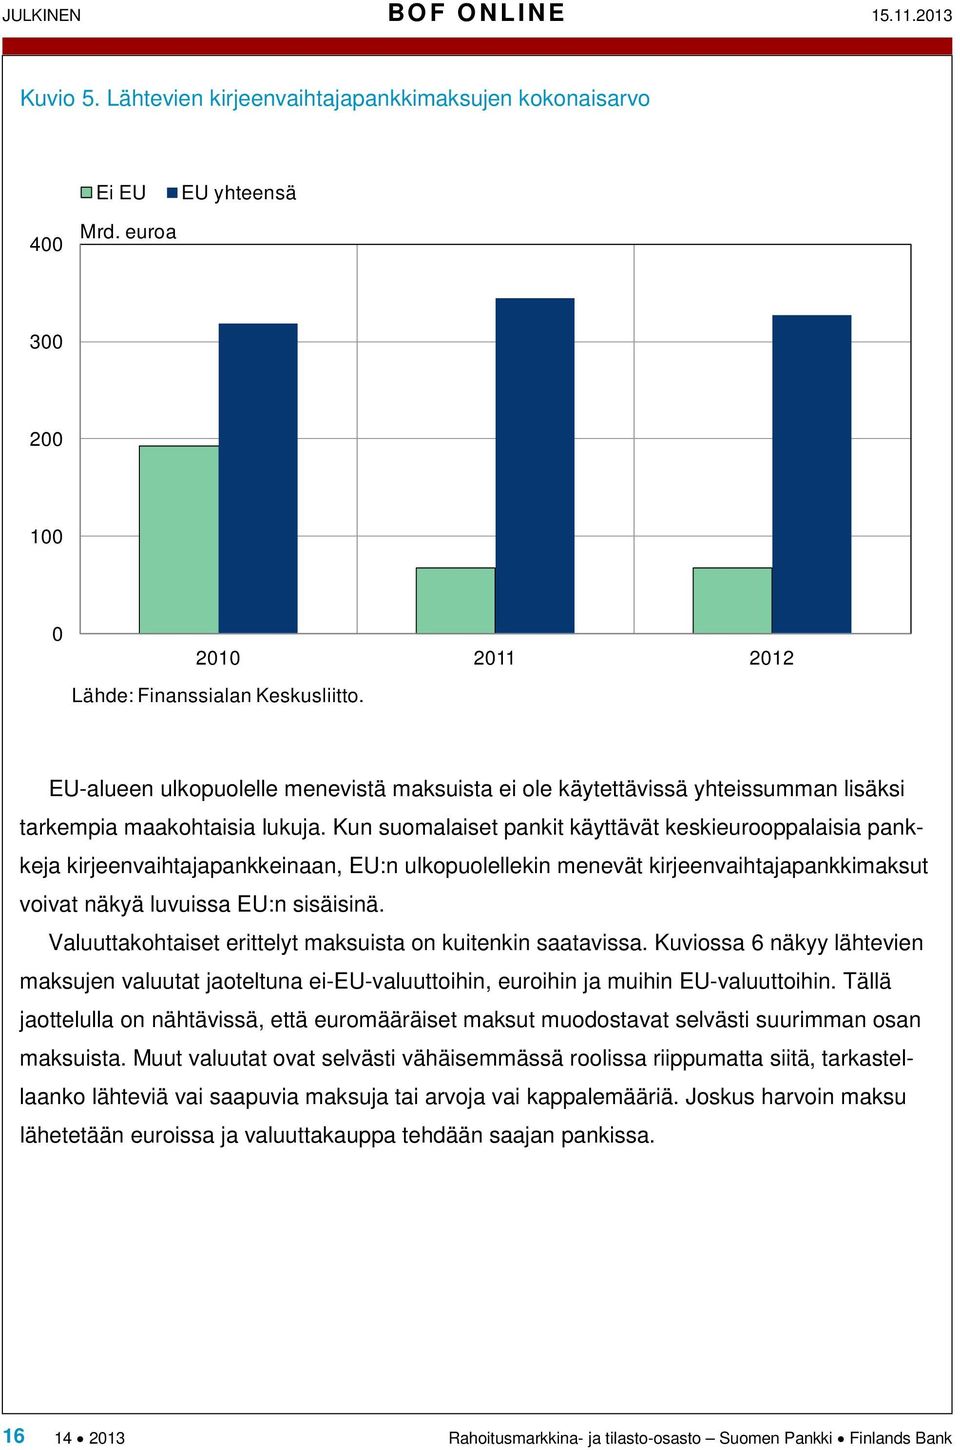 Kun suomalaiset pankit käyttävät keskieurooppalaisia pankkeja kirjeenvaihtajapankkeinaan, EU:n ulkopuolellekin menevät kirjeenvaihtajapankkimaksut voivat näkyä luvuissa EU:n sisäisinä.